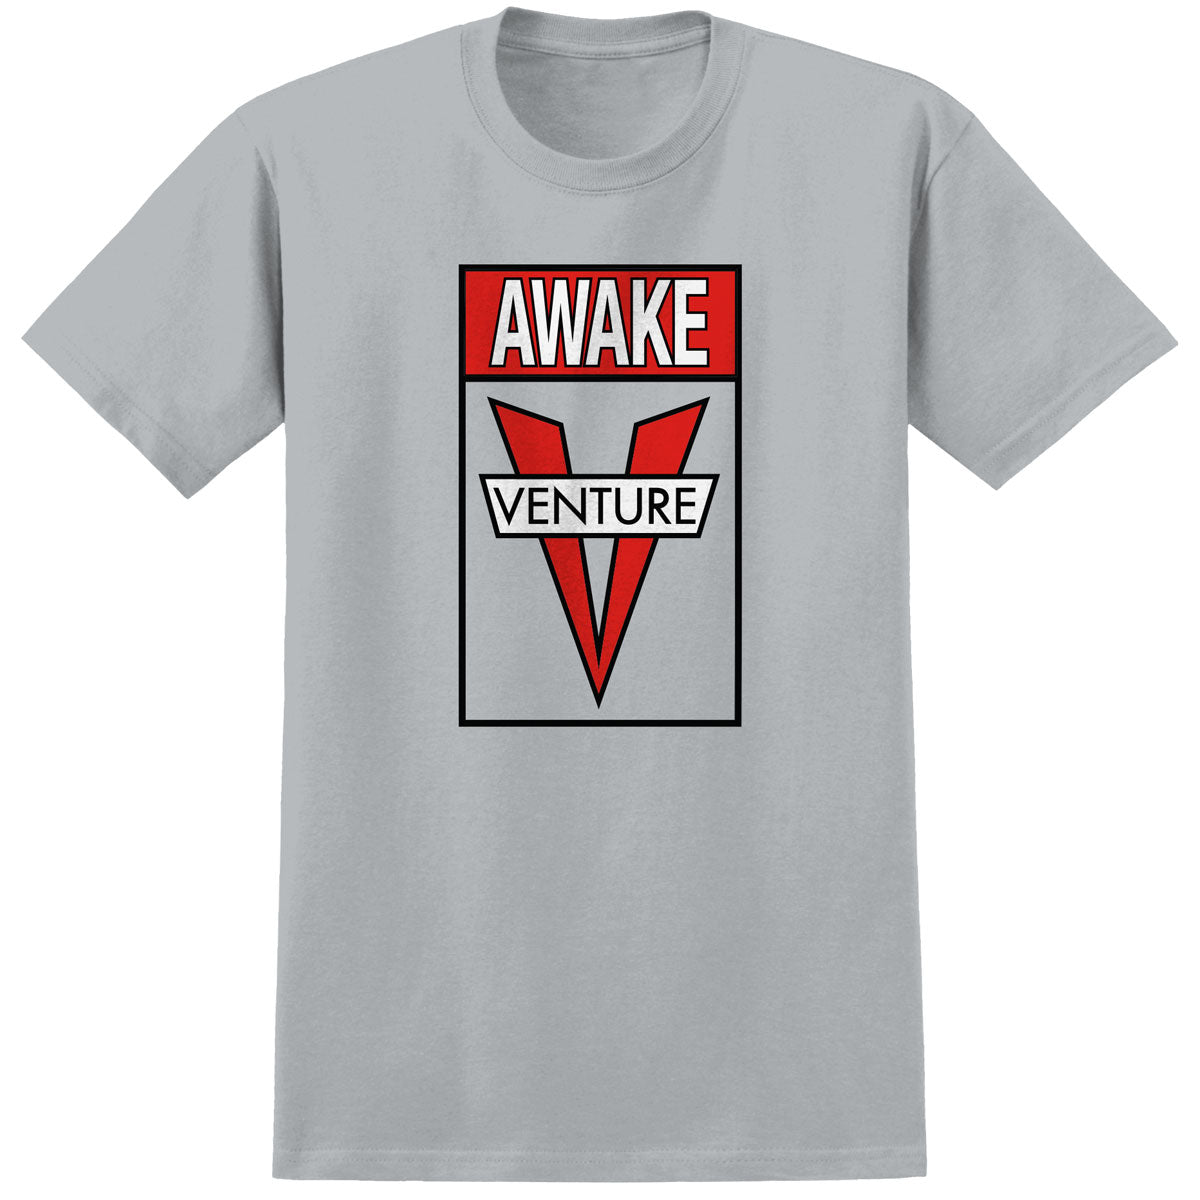 Venture Awake T-Shirt - Ice Grey/Red/White/Black